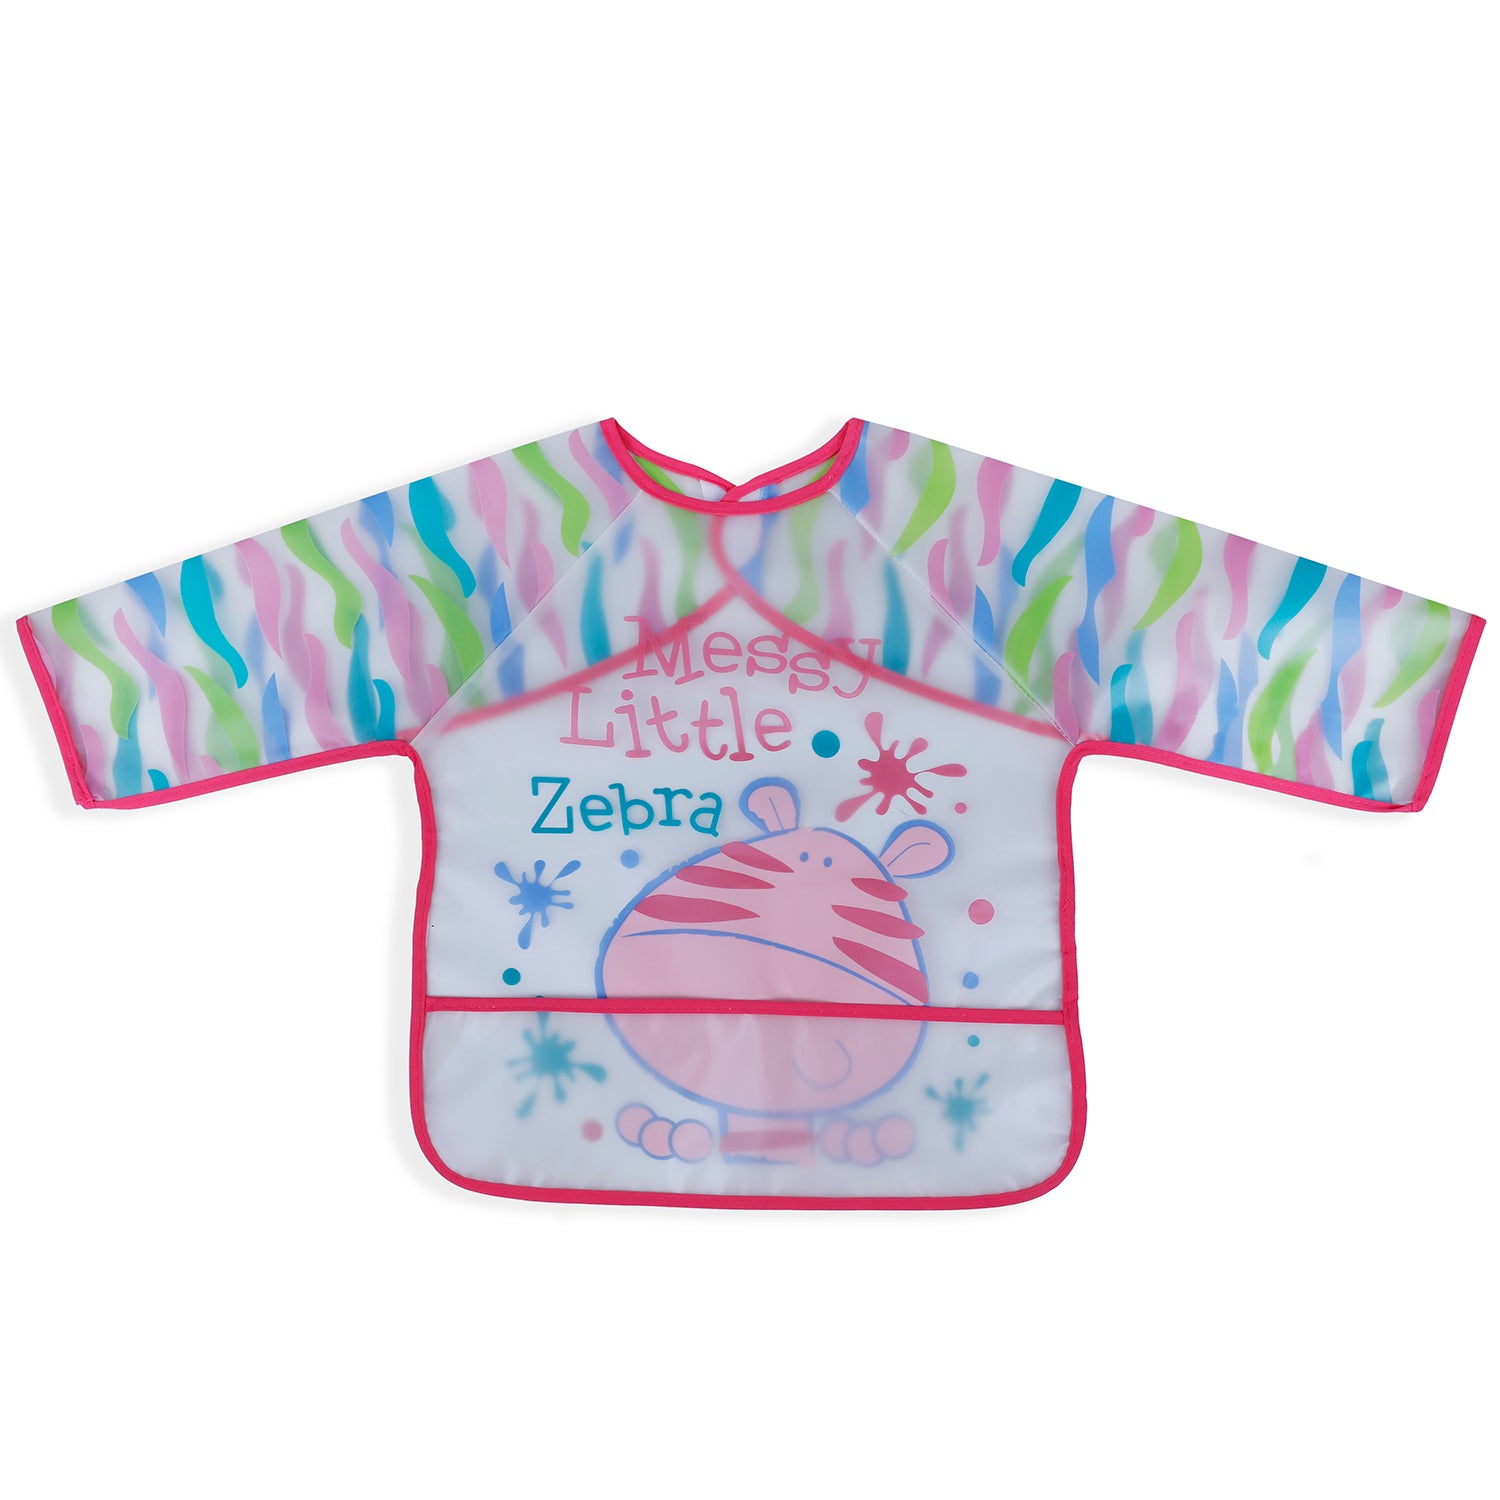 Baby Moo Messy Lil Zebra Long Sleeves Waterproof Wear Me Bib - Pink - Baby Moo